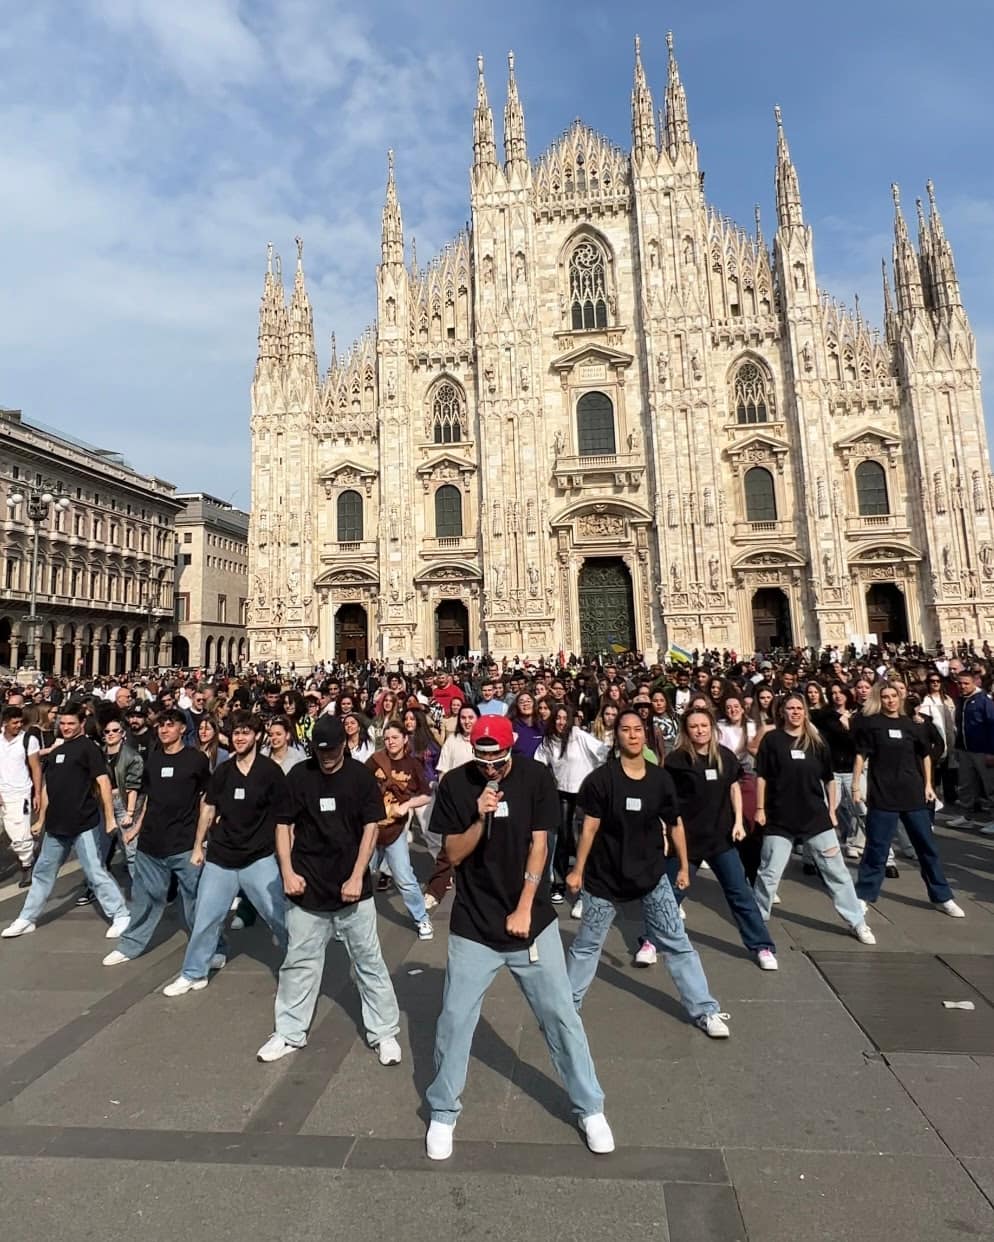 Il flashmob di Federico Baroni con 50 ballerini invade Milano per lanciare il nuovo singolo “PANICO”